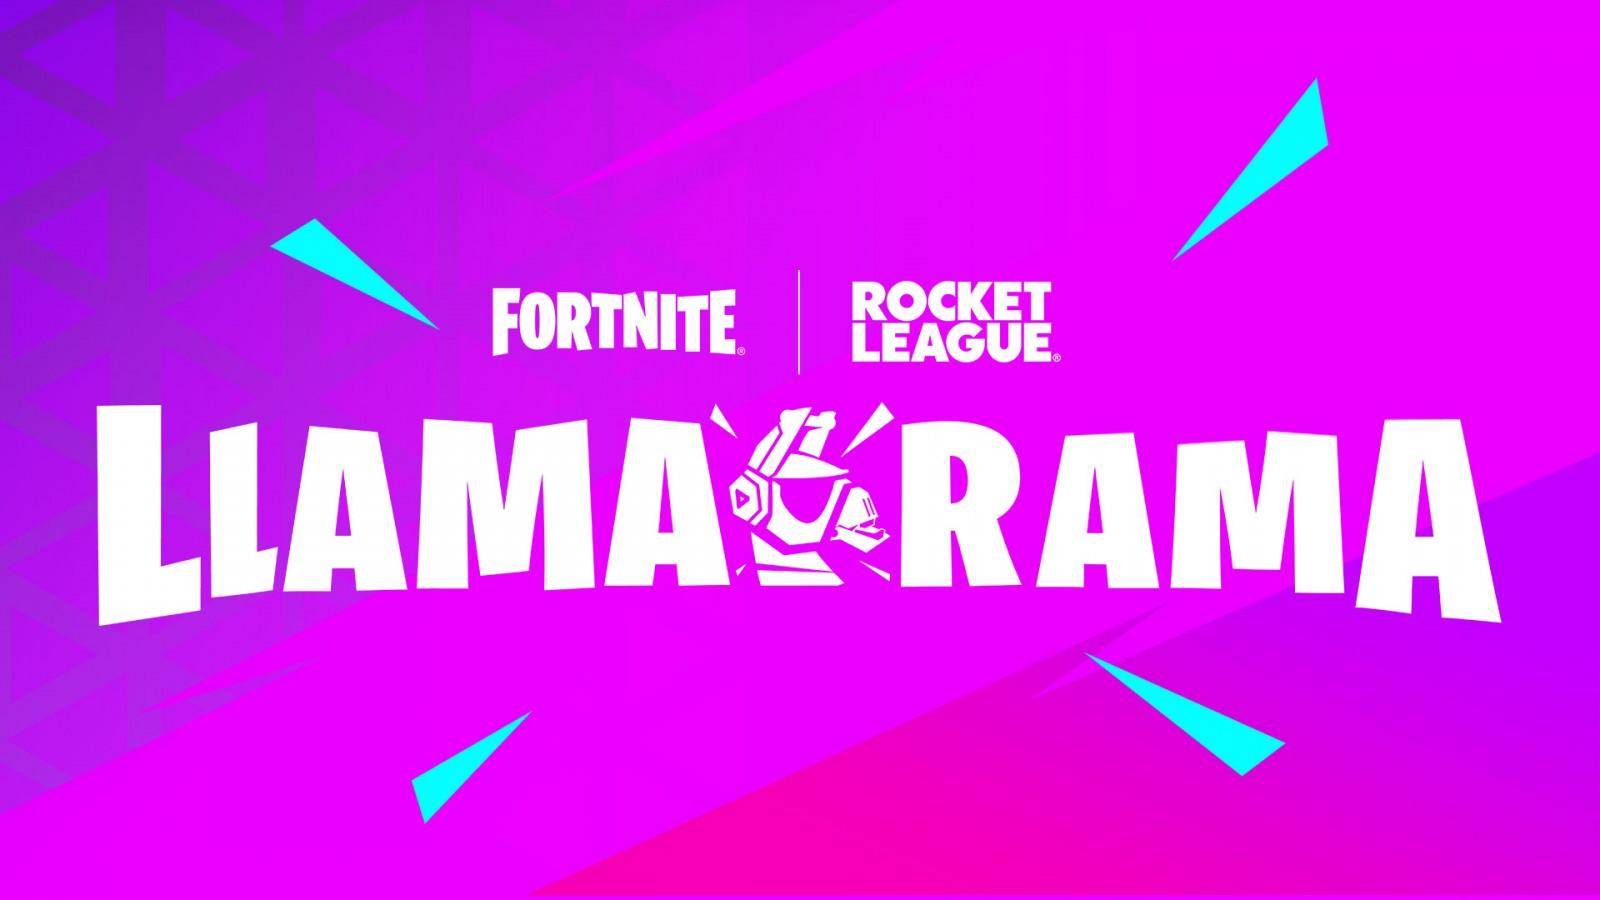 Rocket League y Fortnite son dos de los juegos de mayor demanda de usuarios en línea y esta vez tendrán la oportunidad de unir sus fuerzas mediante el evento de Llama-Rama que dará inicio a una nueva temporada de Rocket League. 